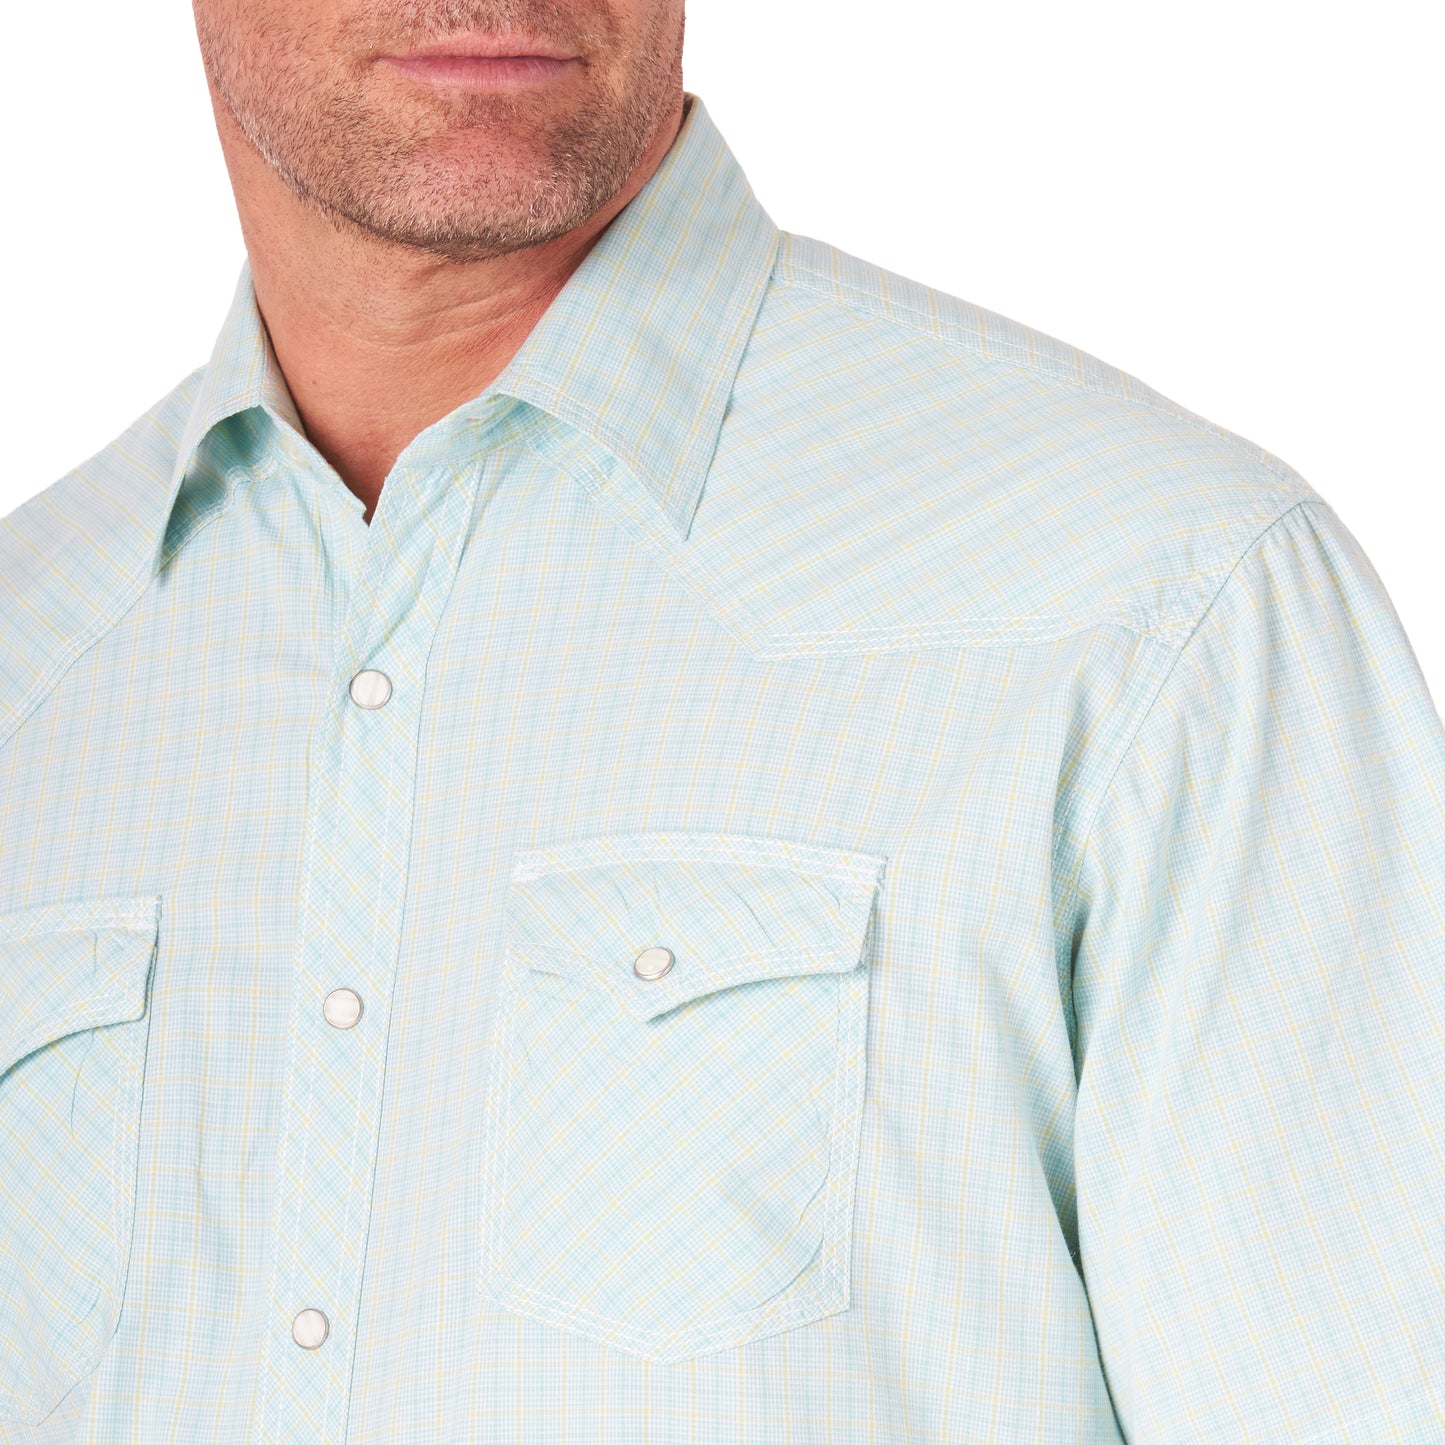 mjc321m Men's 20X Short Sleeved Shirt by Wrangler